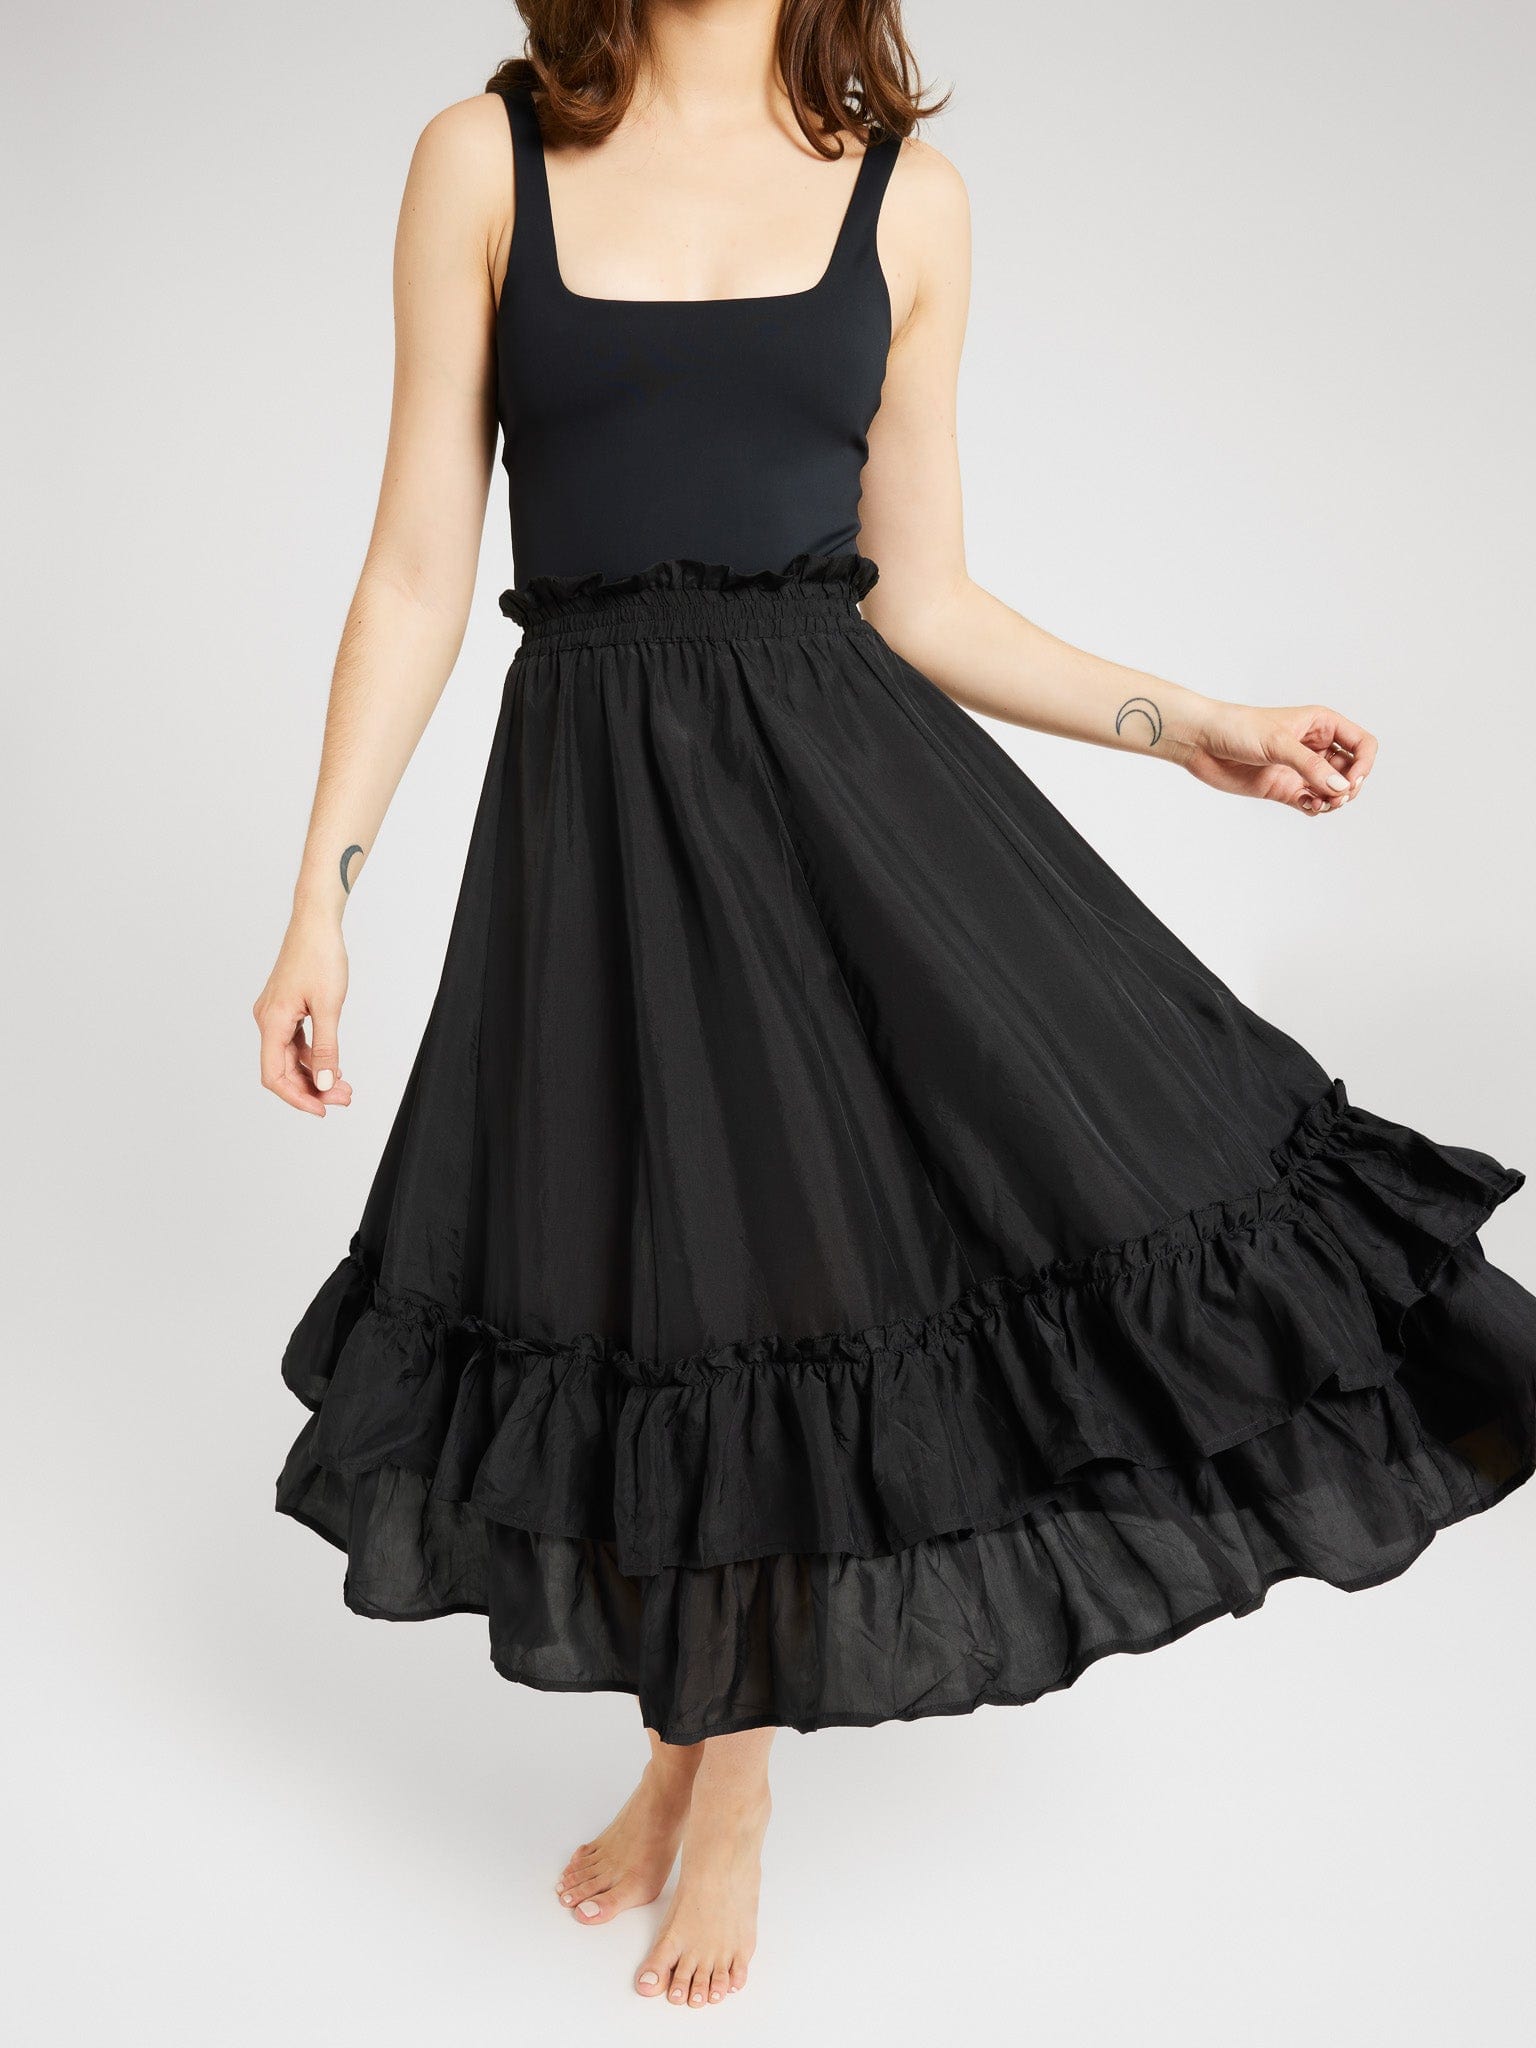 MILLE Clothing Rosalia Skirt in Black Silk